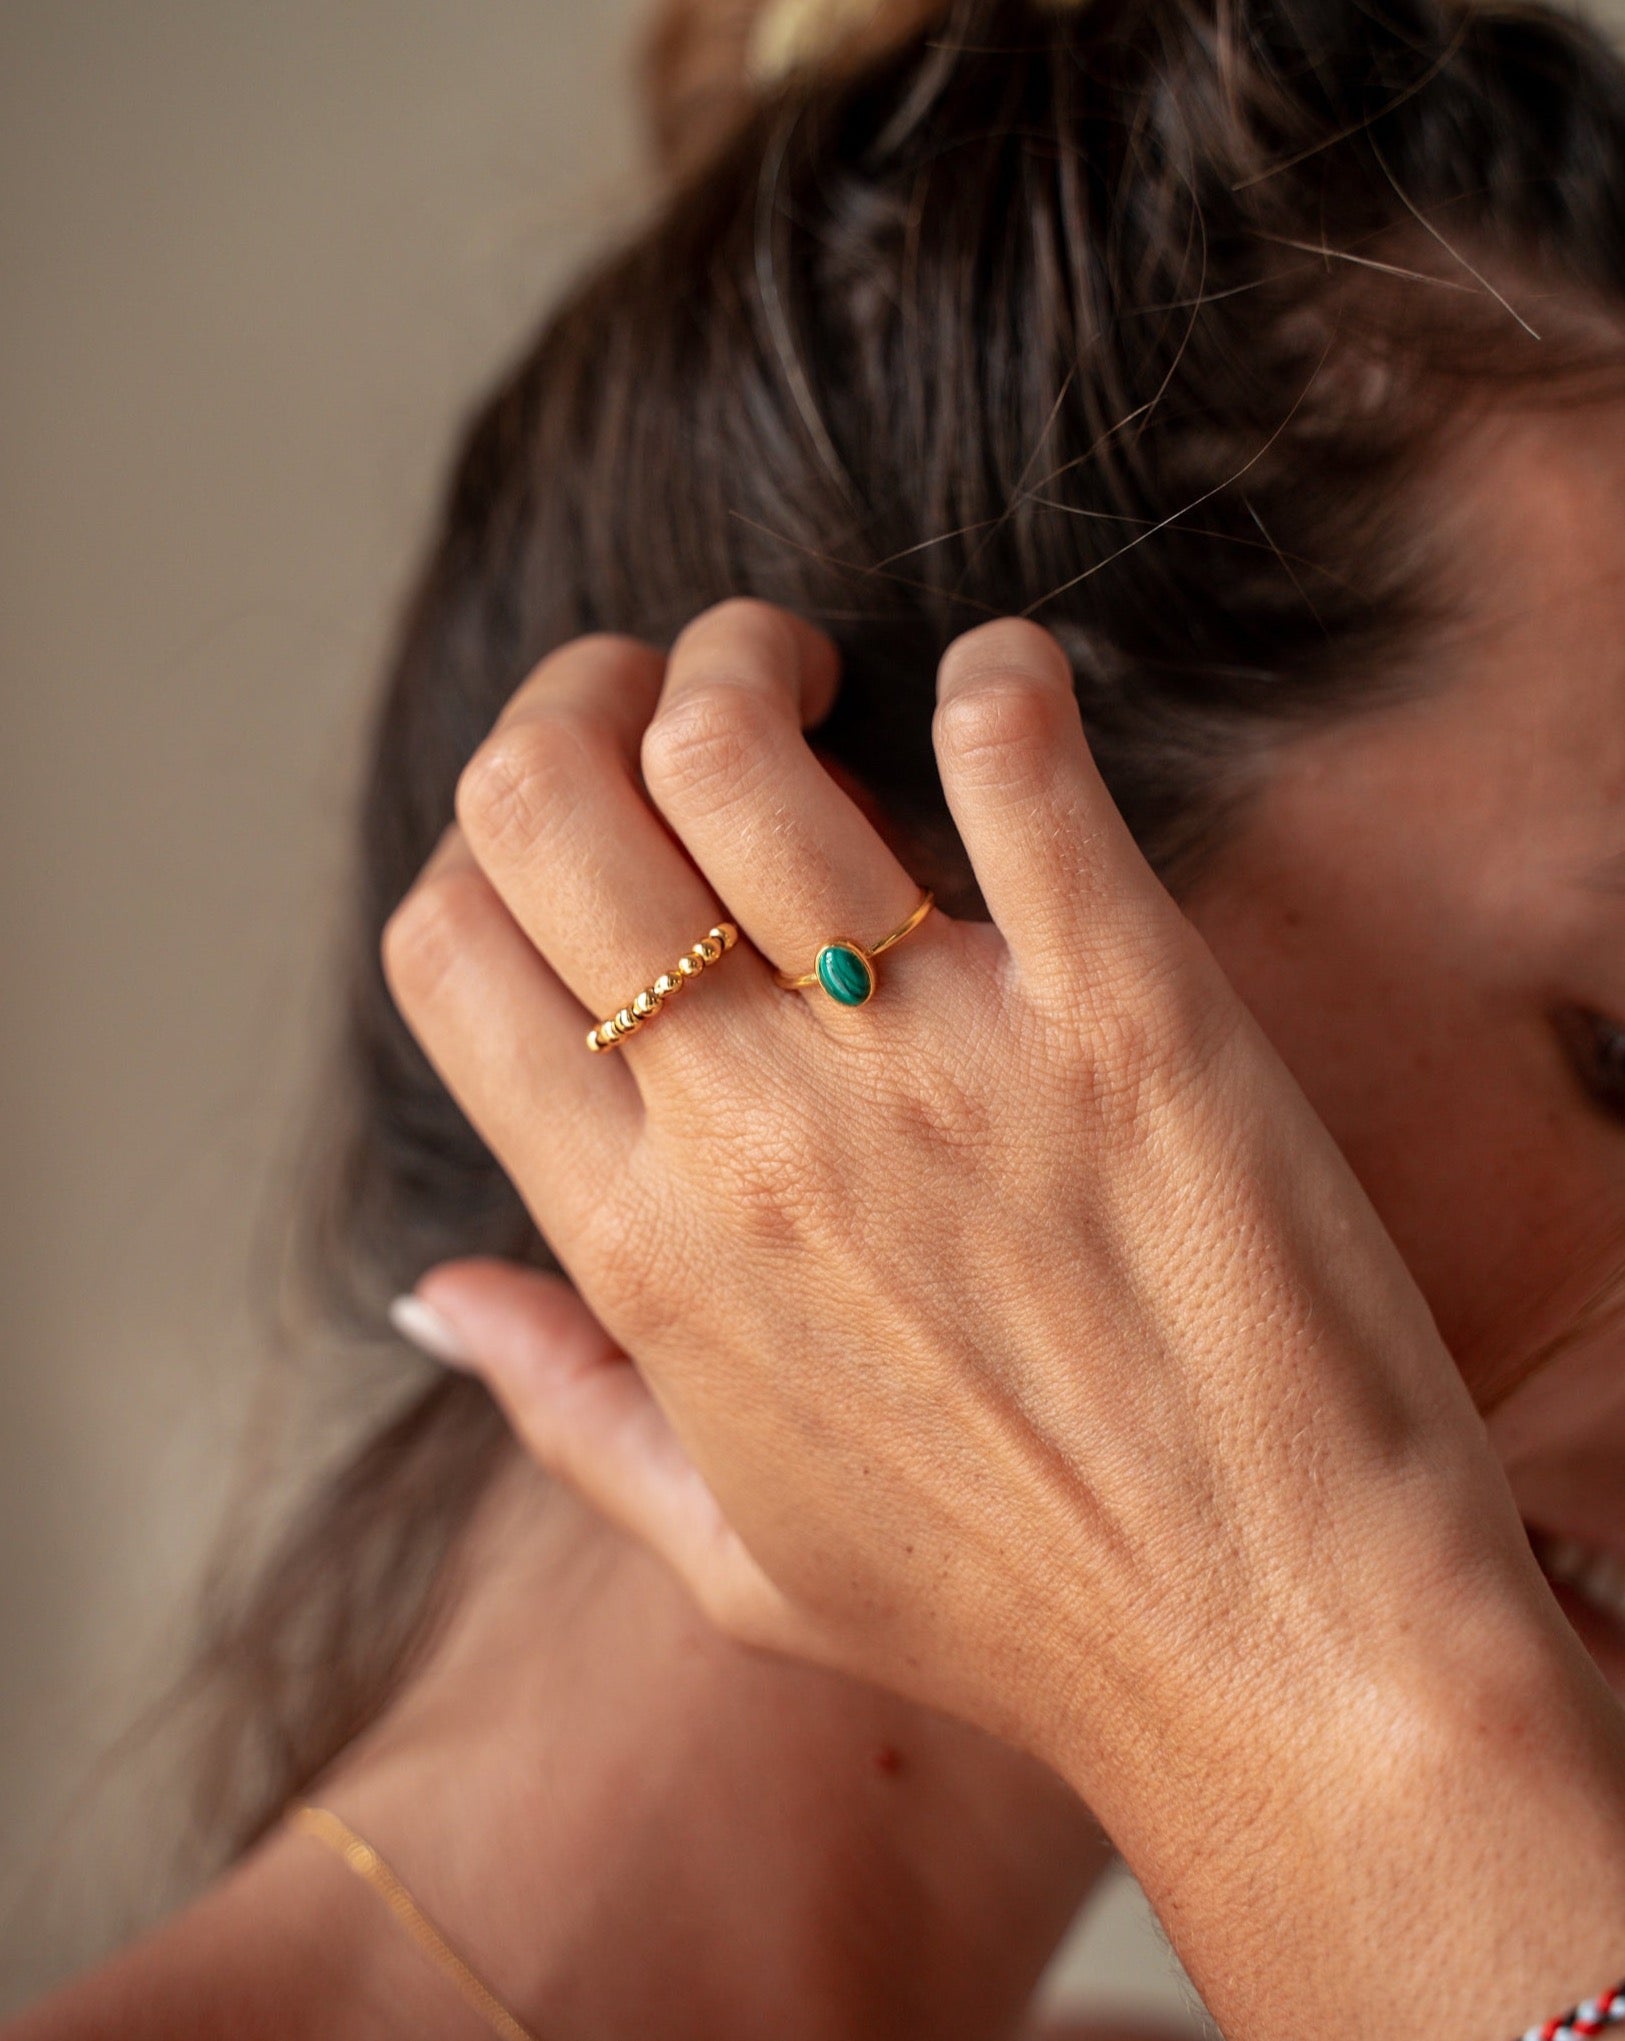 Goldener Malachit Ring | Ring mit Malachit Stein | Schmuck aus Bali | Handgemachter Schmuck online kaufen | Geschenk für Freundin finden | VERLAN Jewellery